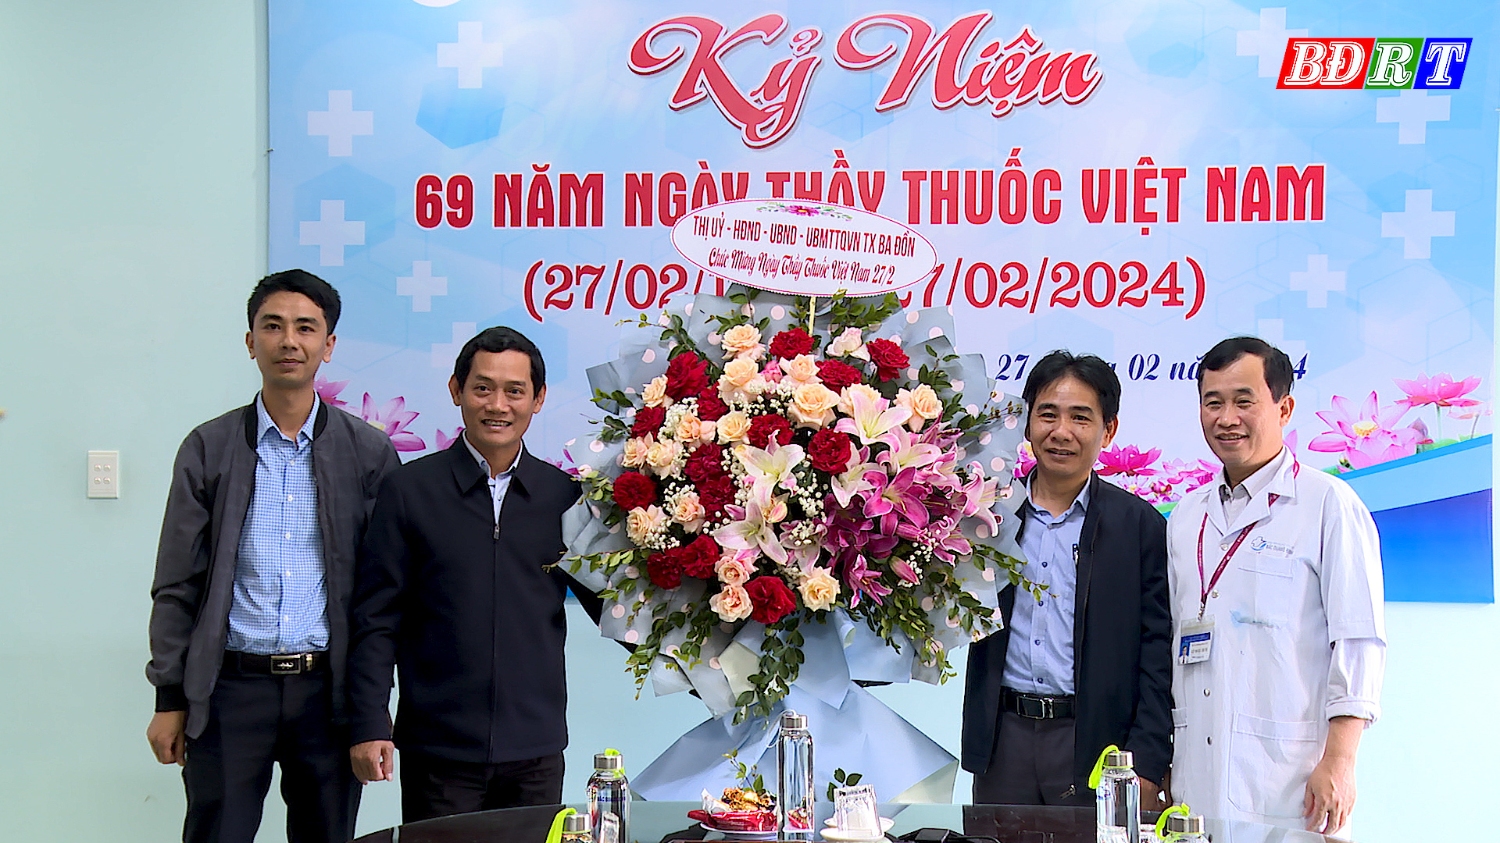 Đồng chí Nguyễn Văn Tình Phó Chủ tịch UBND thị xã đã đến thăm, chúc mừng tập thể cán bộ, nhân viên, y, bác sĩ Bệnh viện Đa khoa Khu vực Bắc Quảng Bình